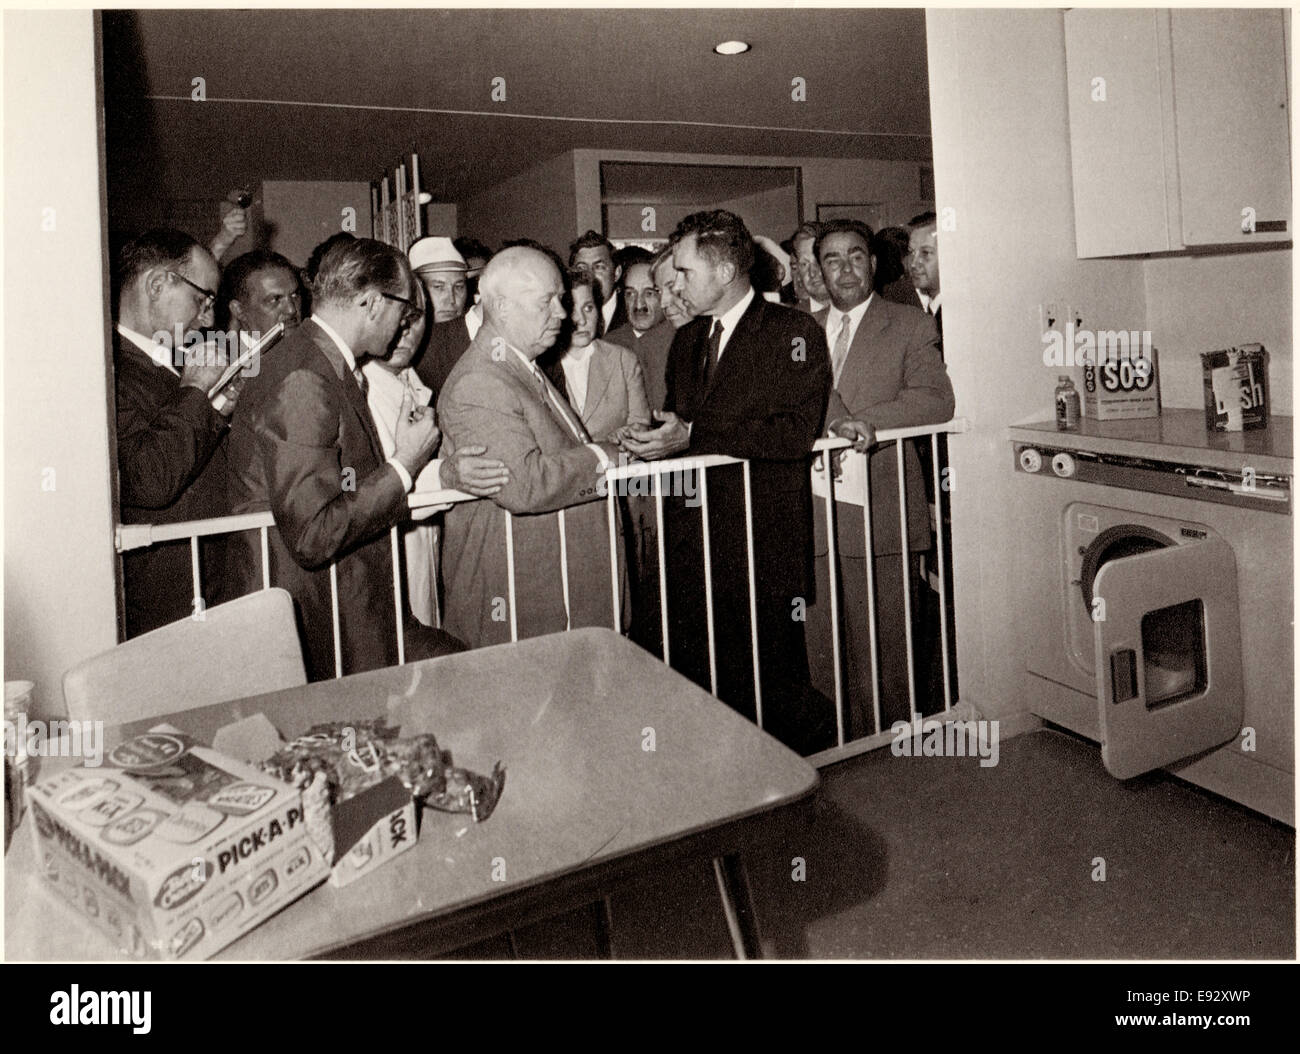 Stati Uniti Vice presidente Richard Nixon, Premier sovietico Nikita Khruschev frequentando American Exhibition risultante in cucina "discussione", Mosca, U.S.S.R, 1959 Foto Stock